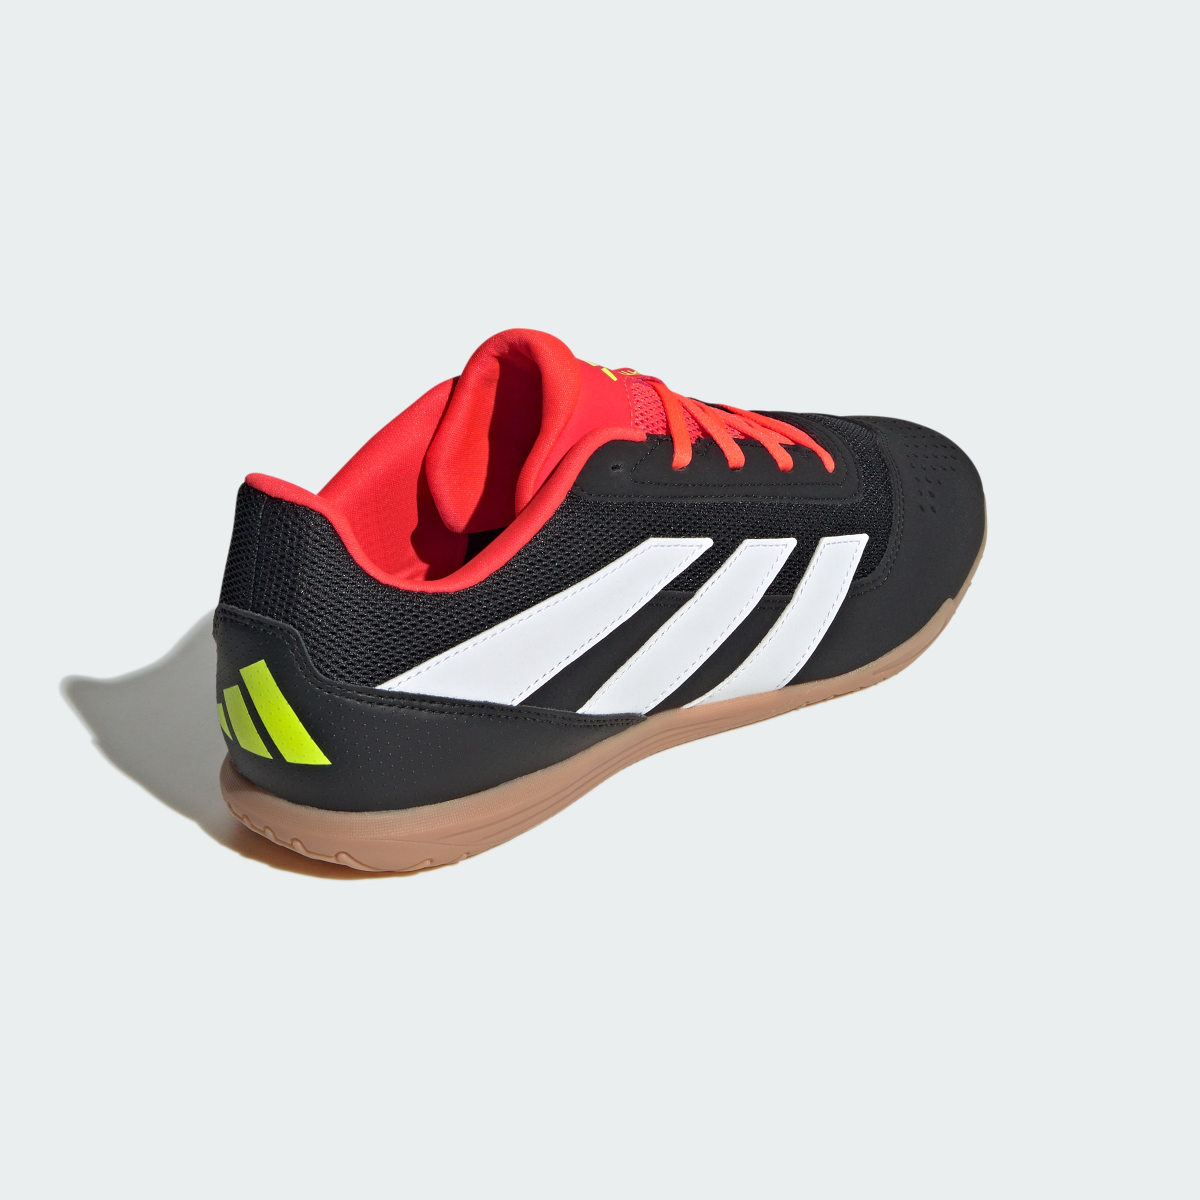 Adidas Predator Club Indoor Sala Football Boots. 6